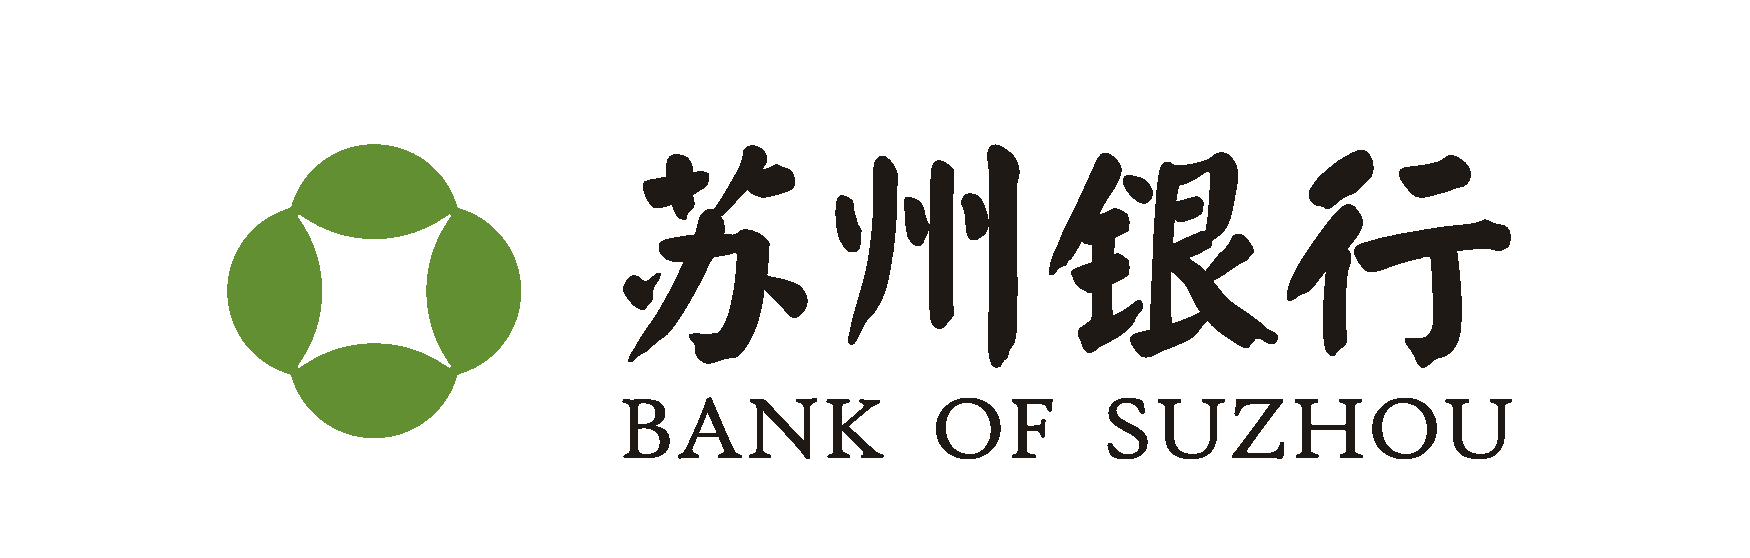 苏州银行